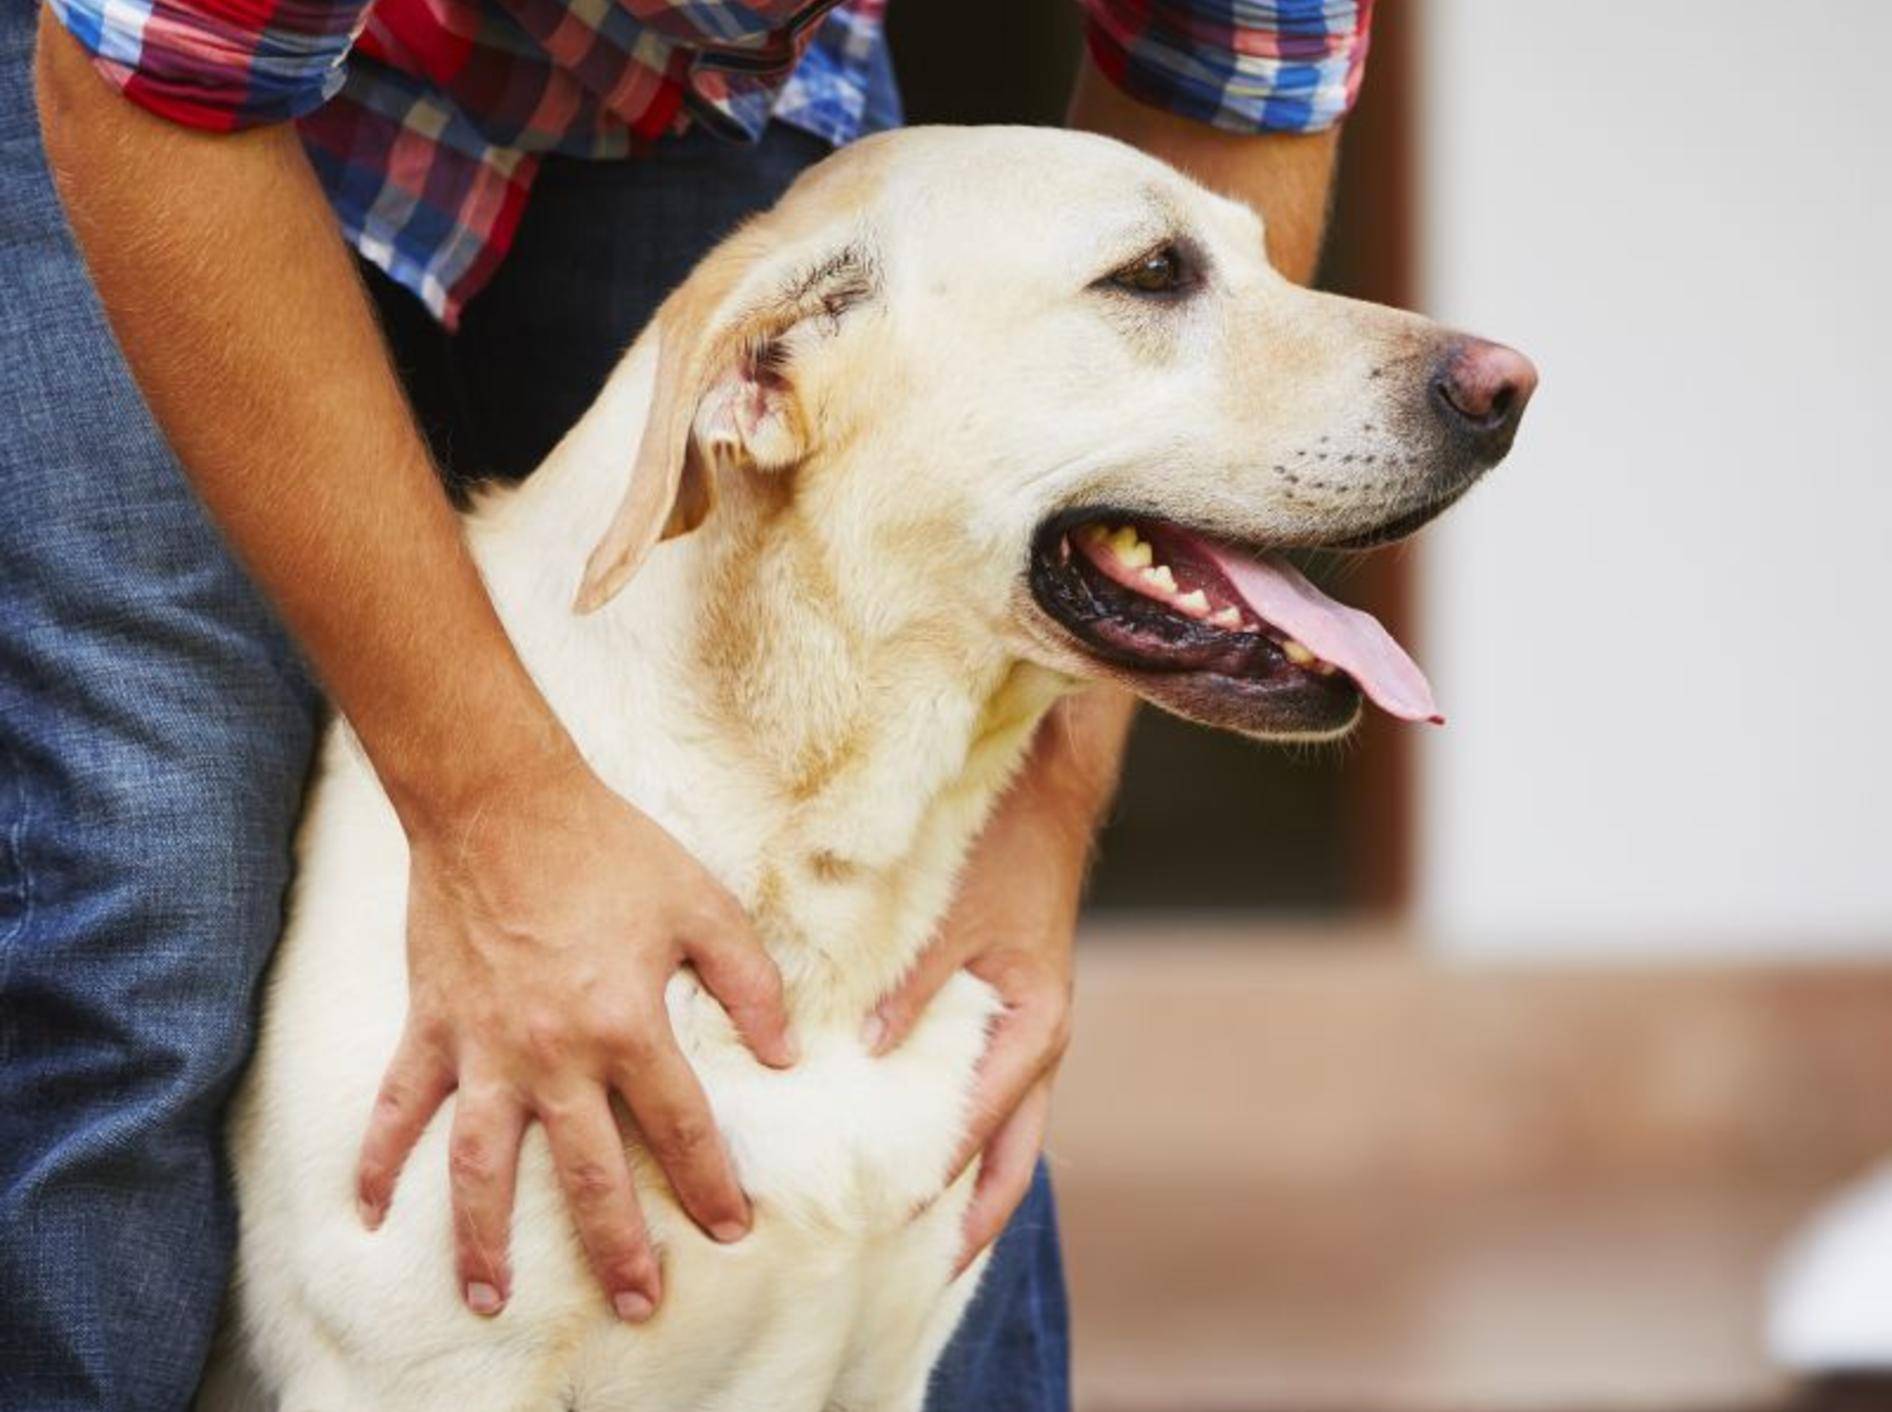 Haarausfall kann beim Hund verschiedene Ursachen haben – Bild: Shutterstock / Jaromir Chalabala